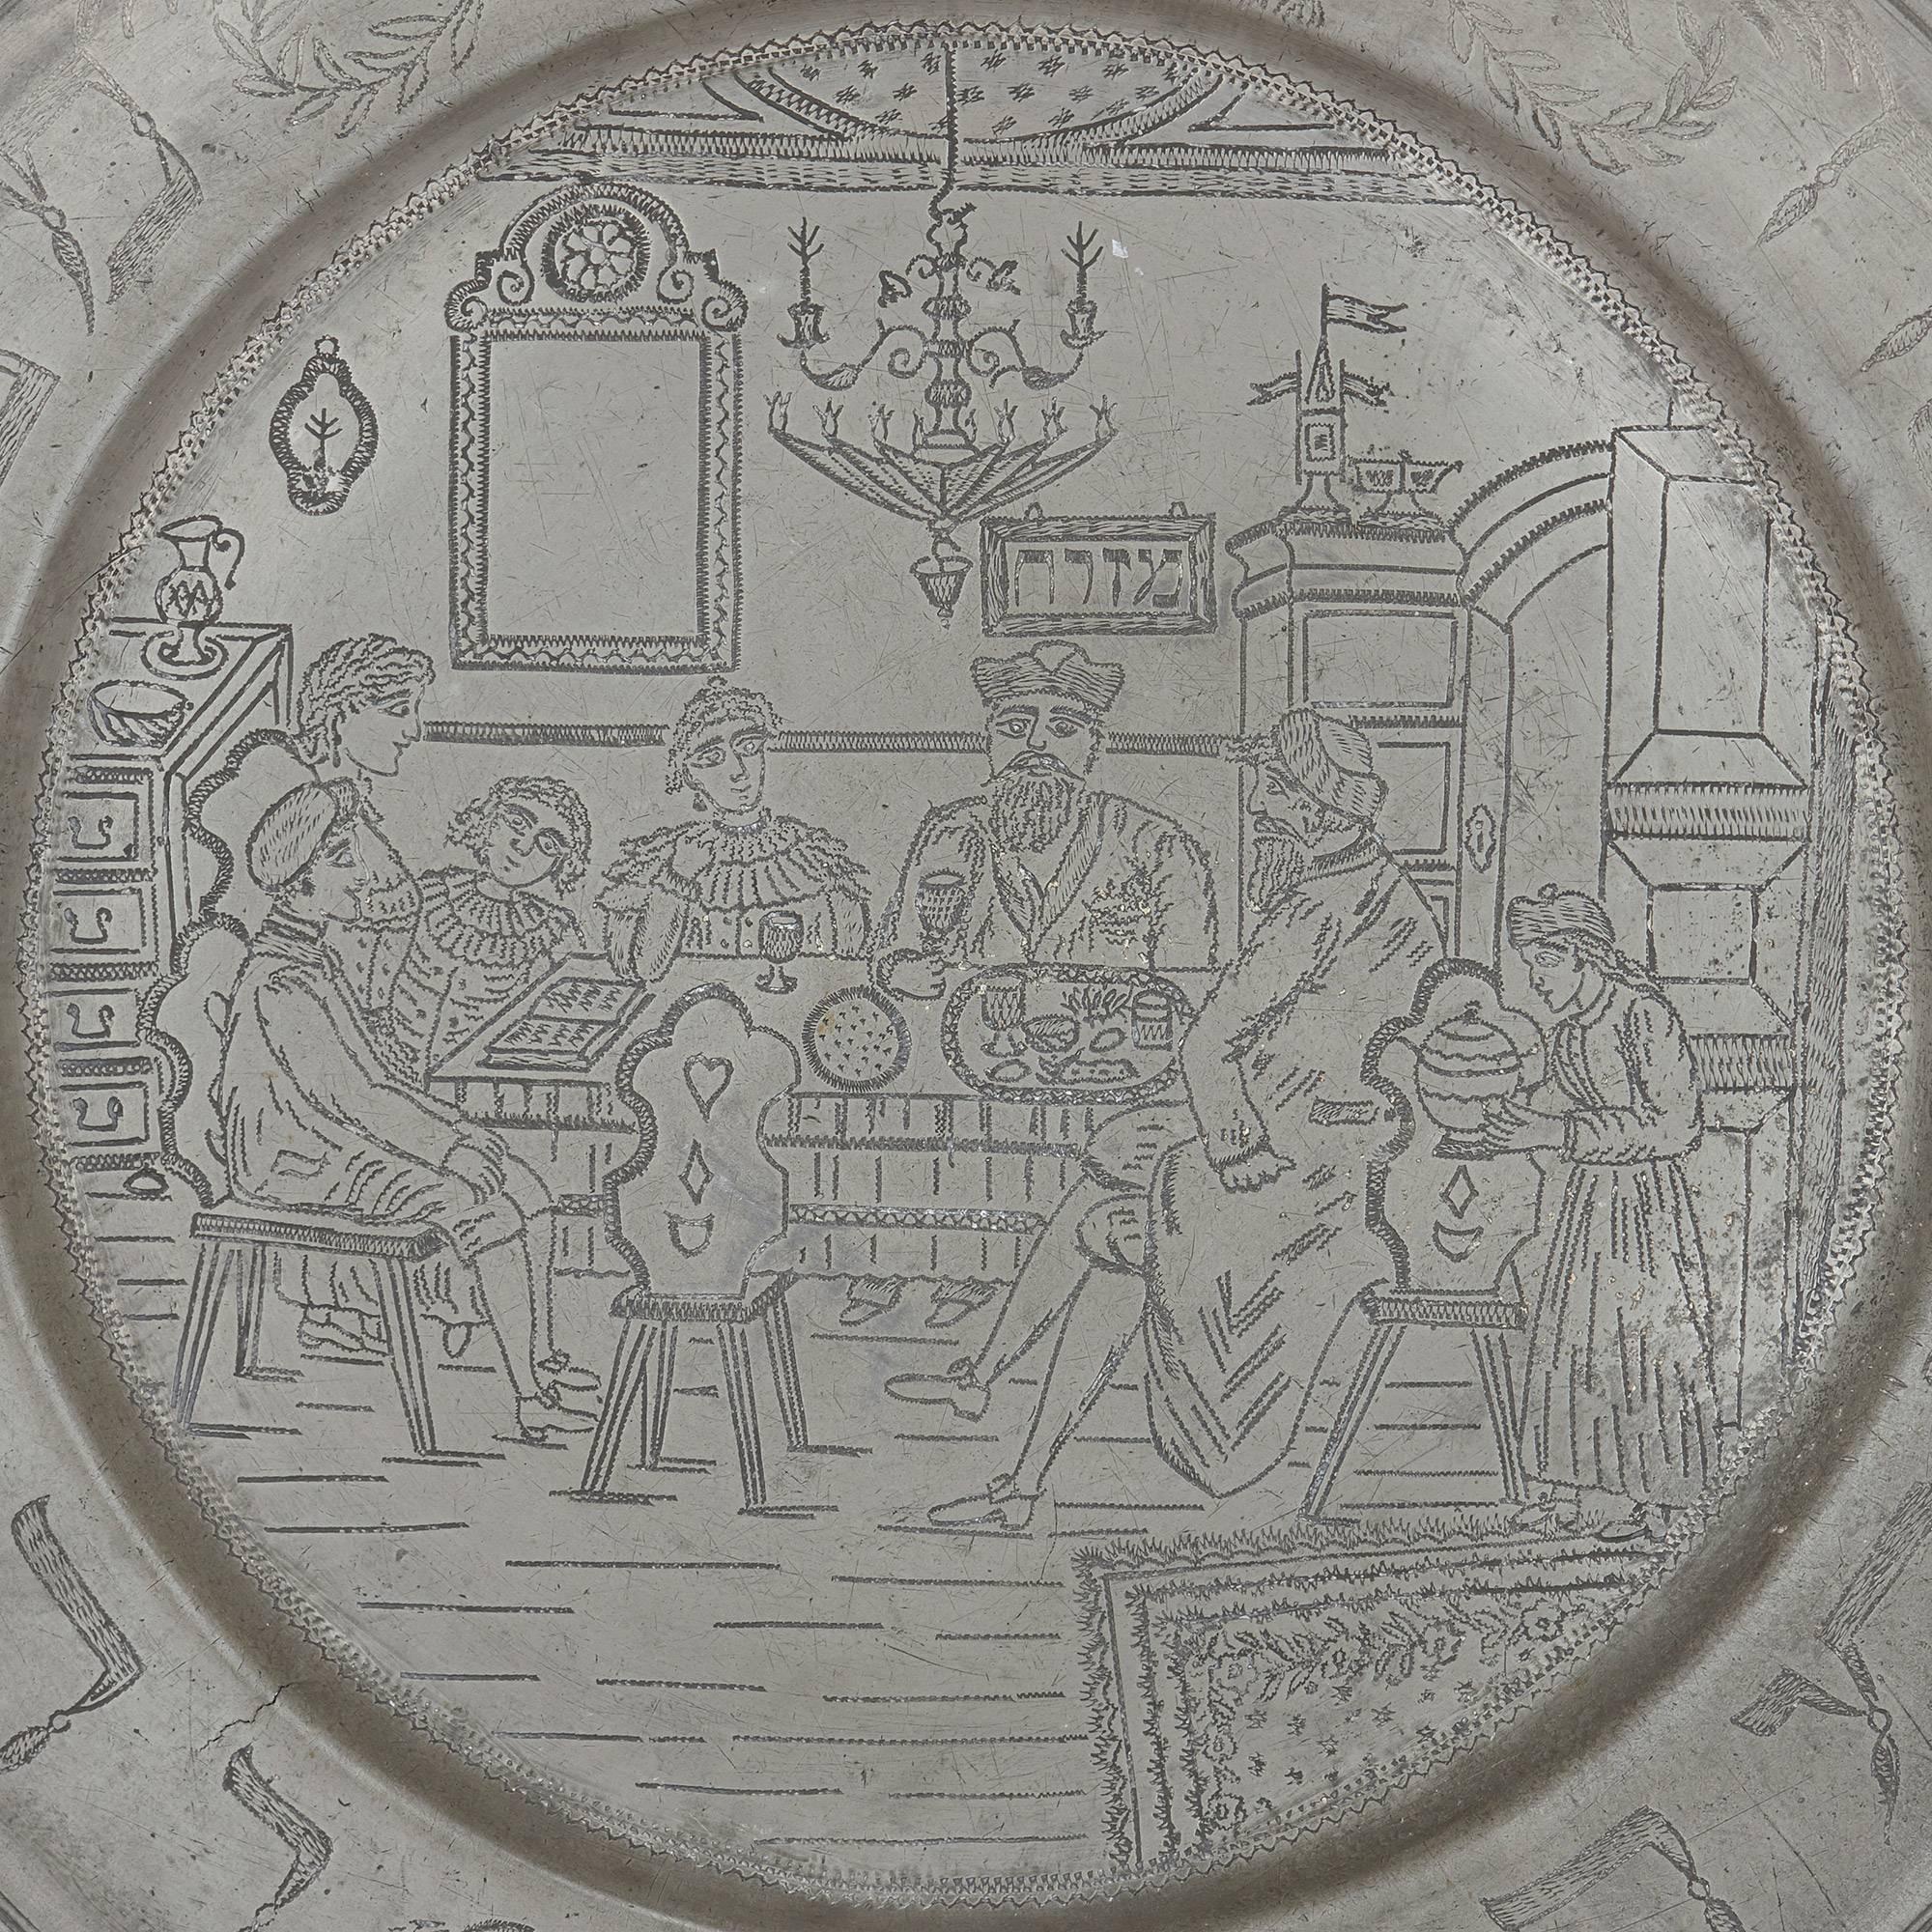 Cette assiette allemande en étain ancien représente une scène familiale, alors que le groupe est assis à table pendant le Seder de la Pâque. Sur le pourtour de la plaque figurent diverses inscriptions hébraïques gravées, ainsi qu'une étoile de David